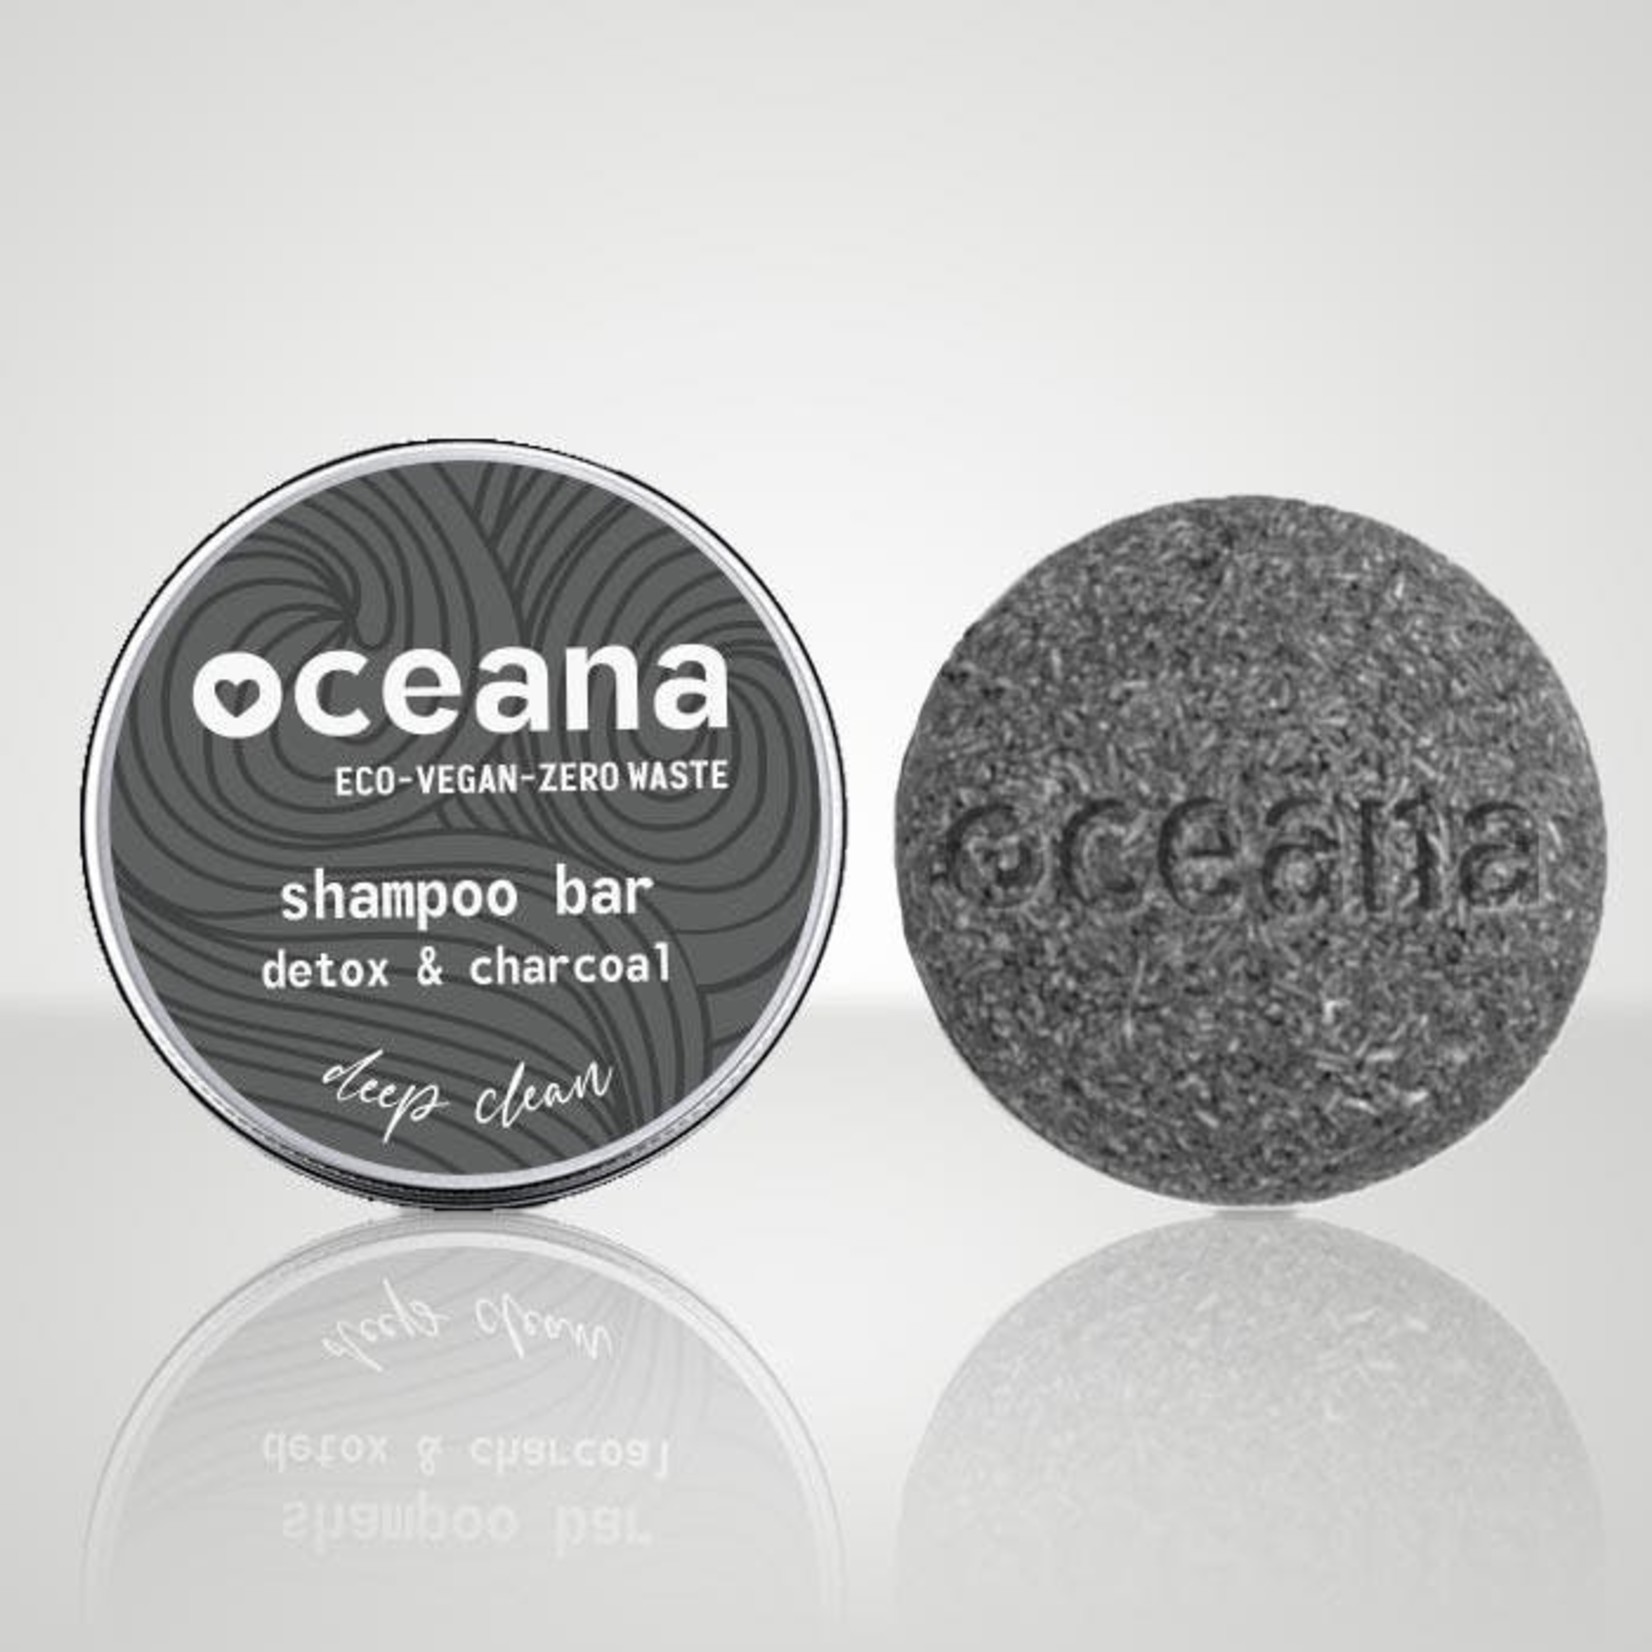 Oceana Oceana - natuurlijke shampoobar met houtskool voor diepe reiniging.